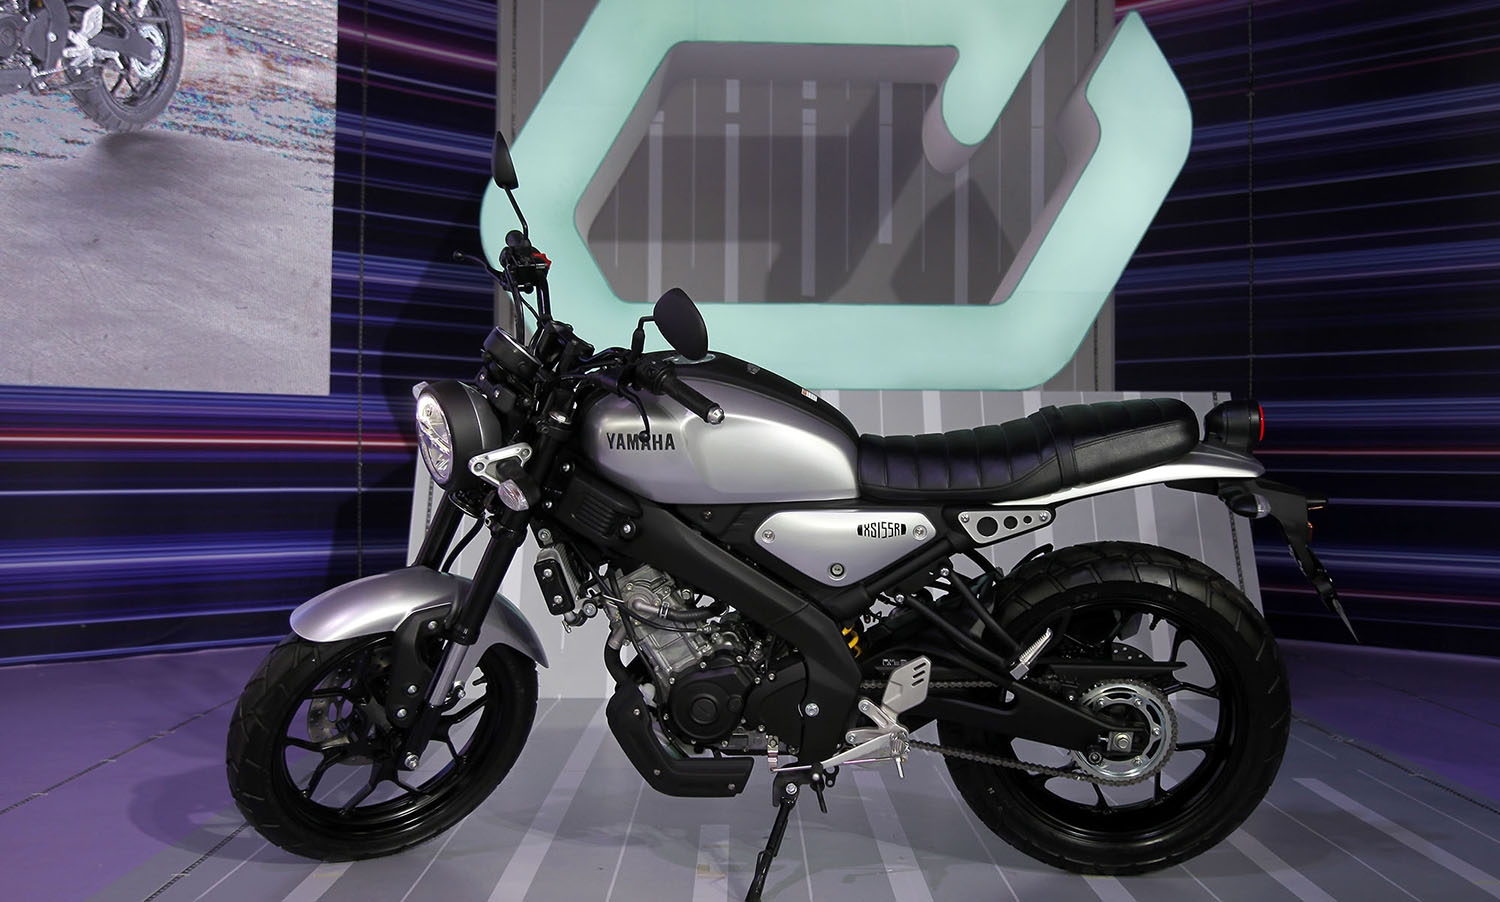 Yamaha và Honda đang cạnh tranh quyết liệt trong nhóm sản phẩm dánh cho người mới tập chơi mô tô.